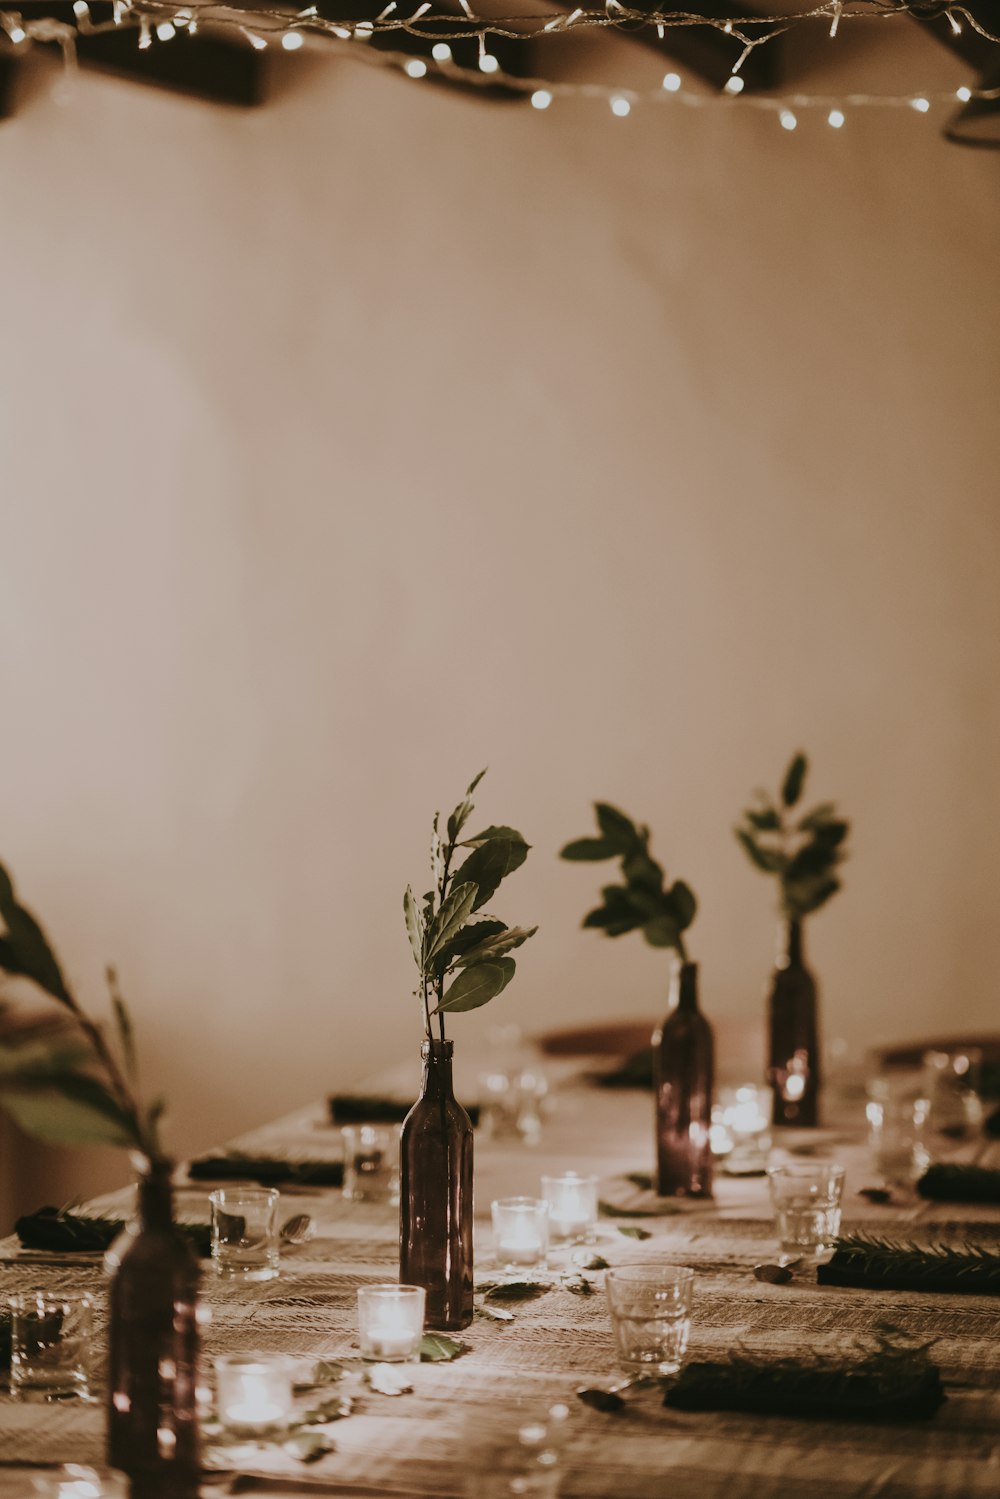 벽 근처 테이블에 깨끗한 음료수 잔과 꽃